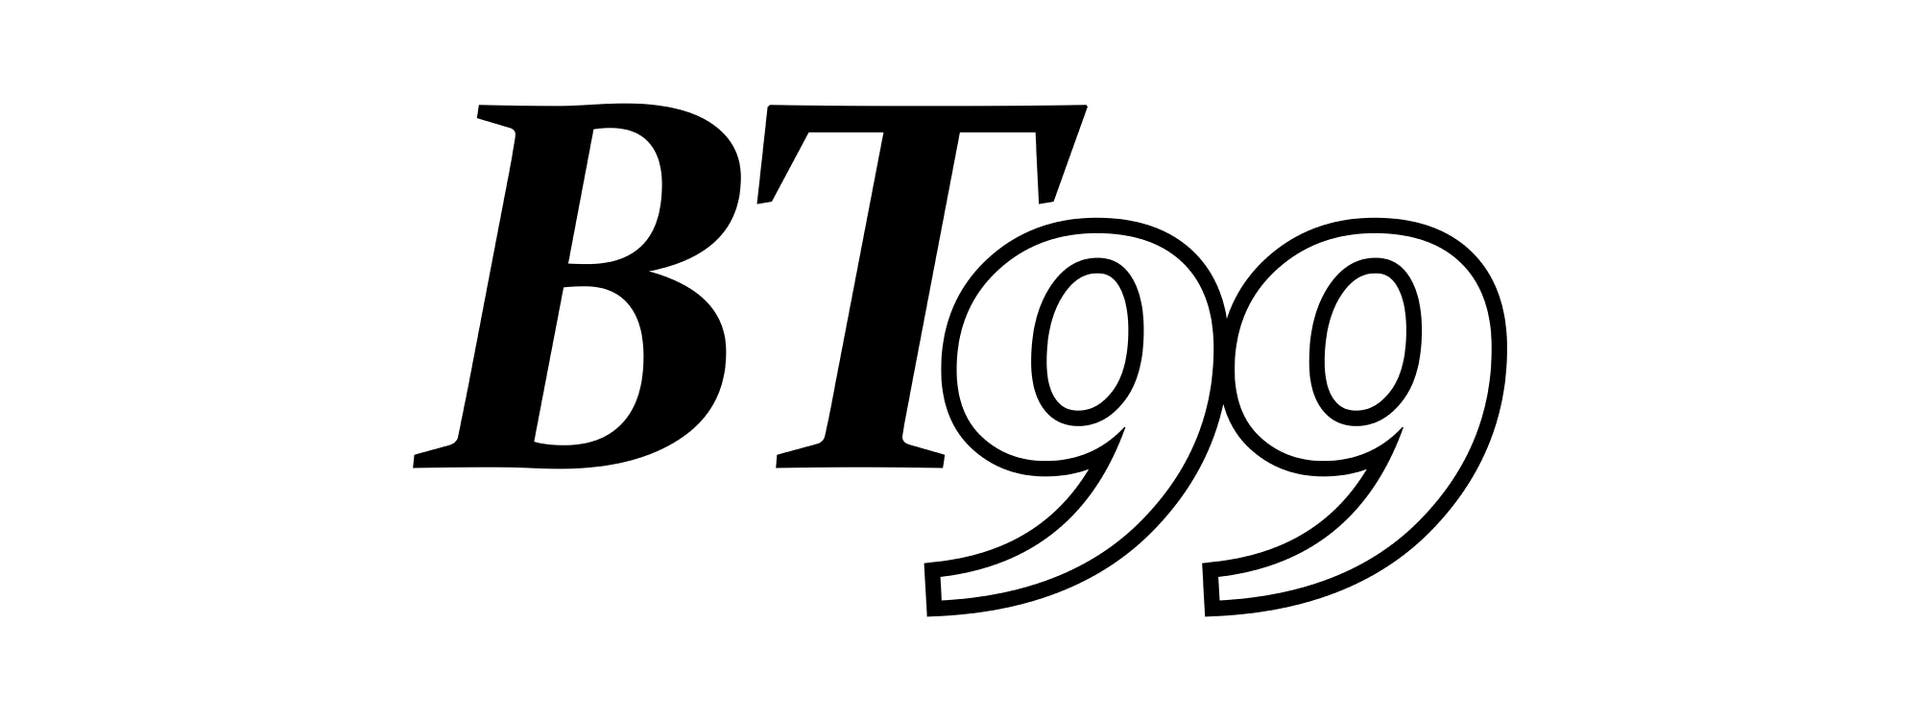 BT-99 Logo